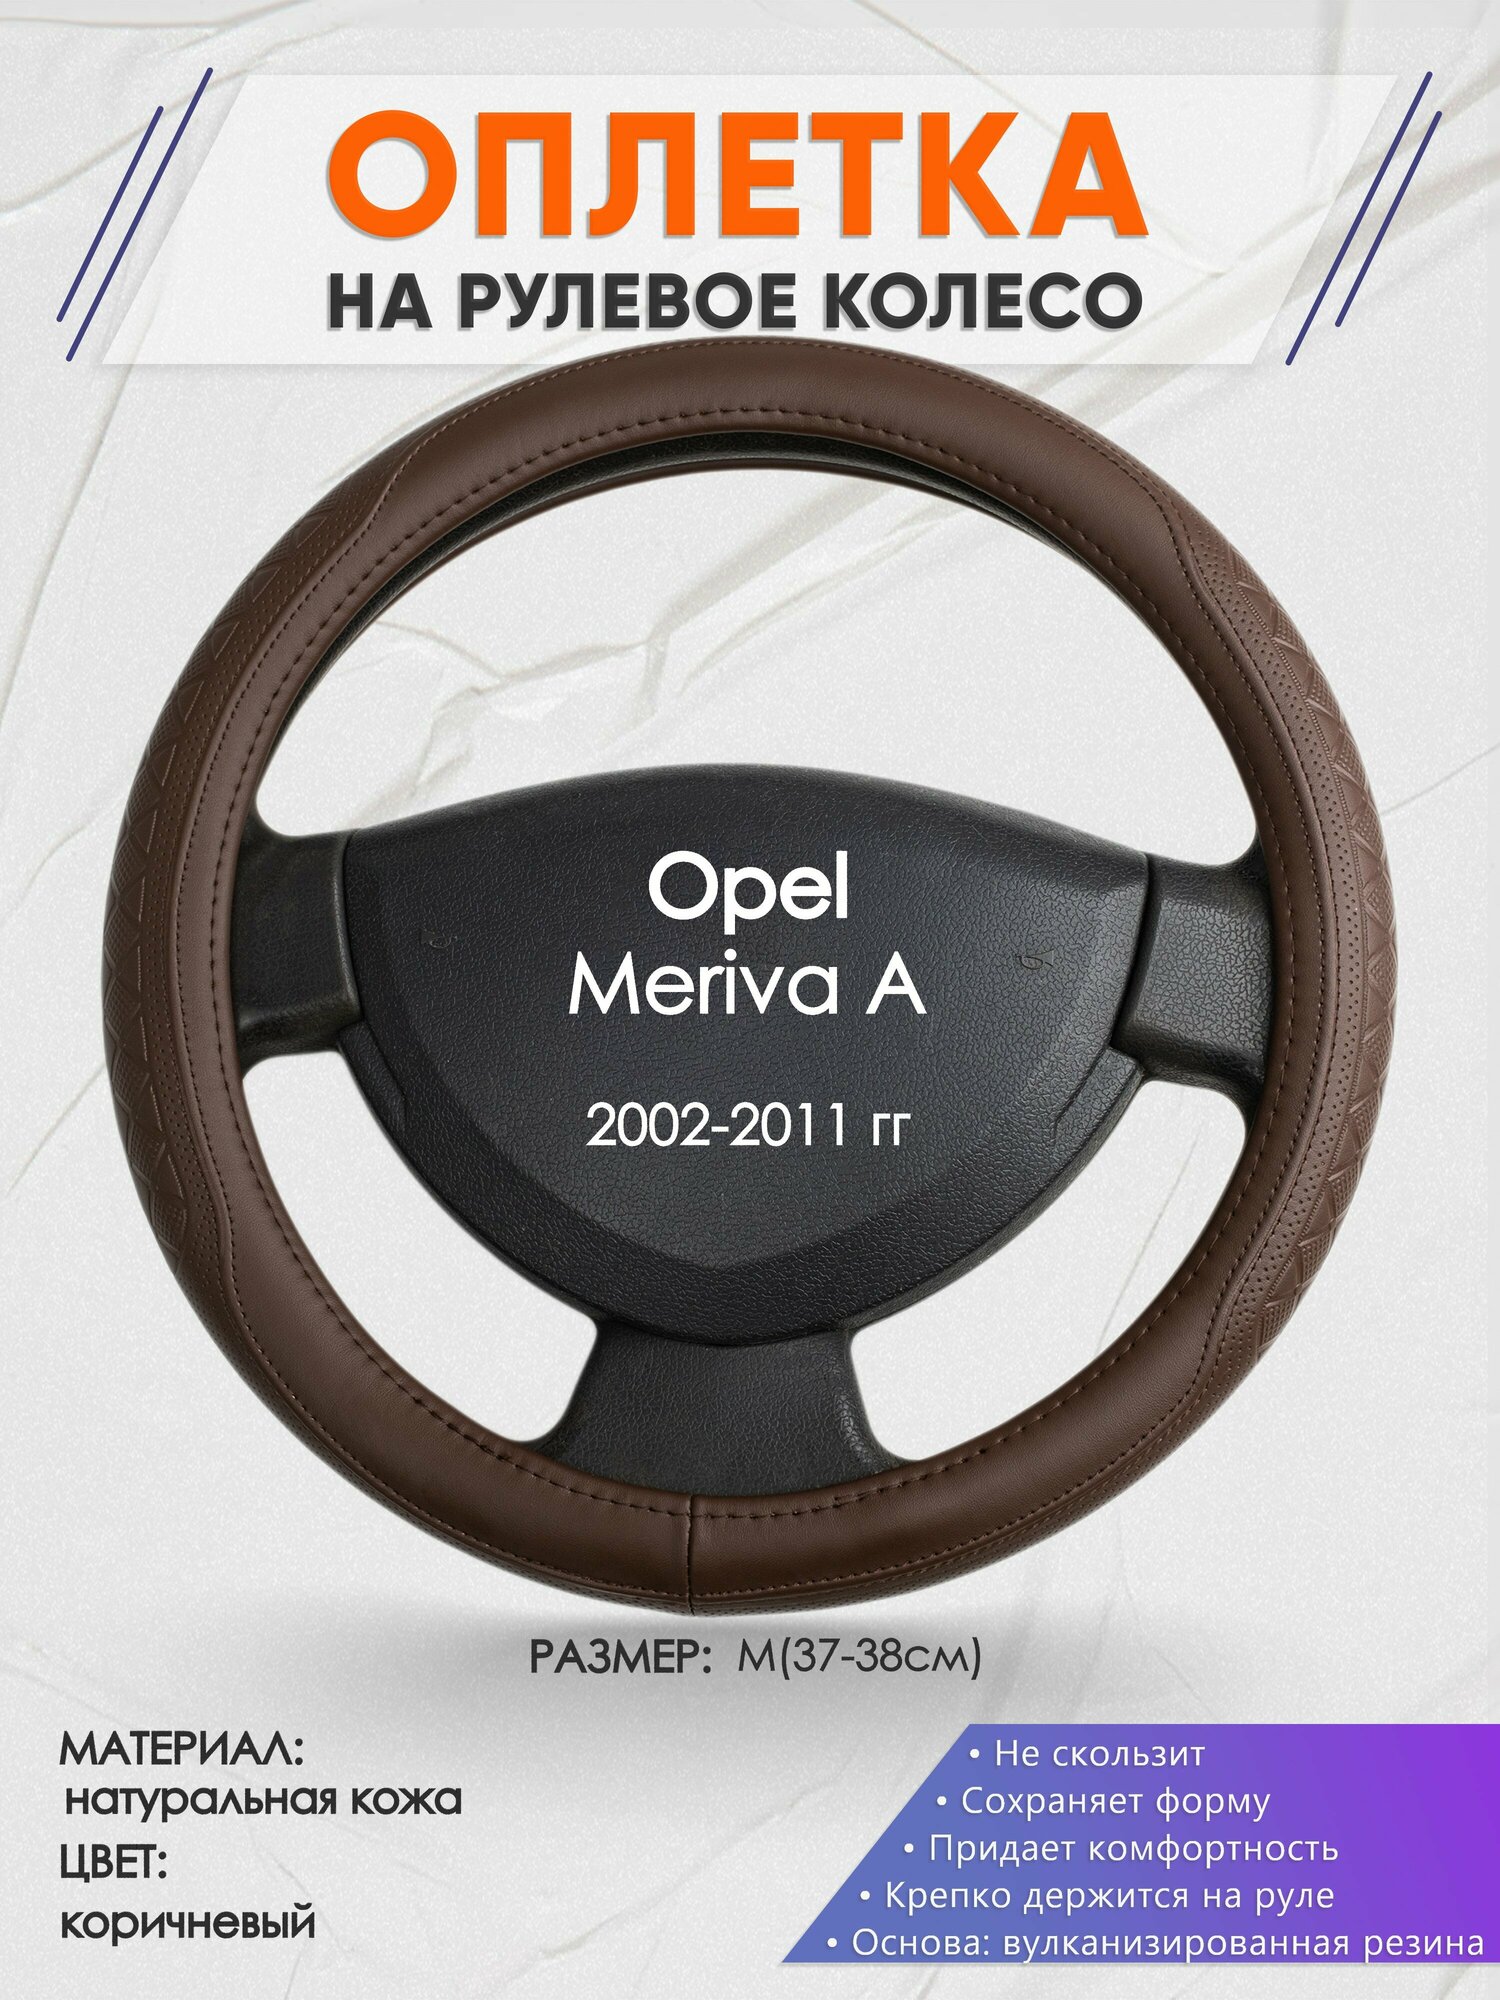 Оплетка на руль для Opel Meriva A(Опель Мерива А) 2002-2011, M(37-38см), Натуральная кожа 88